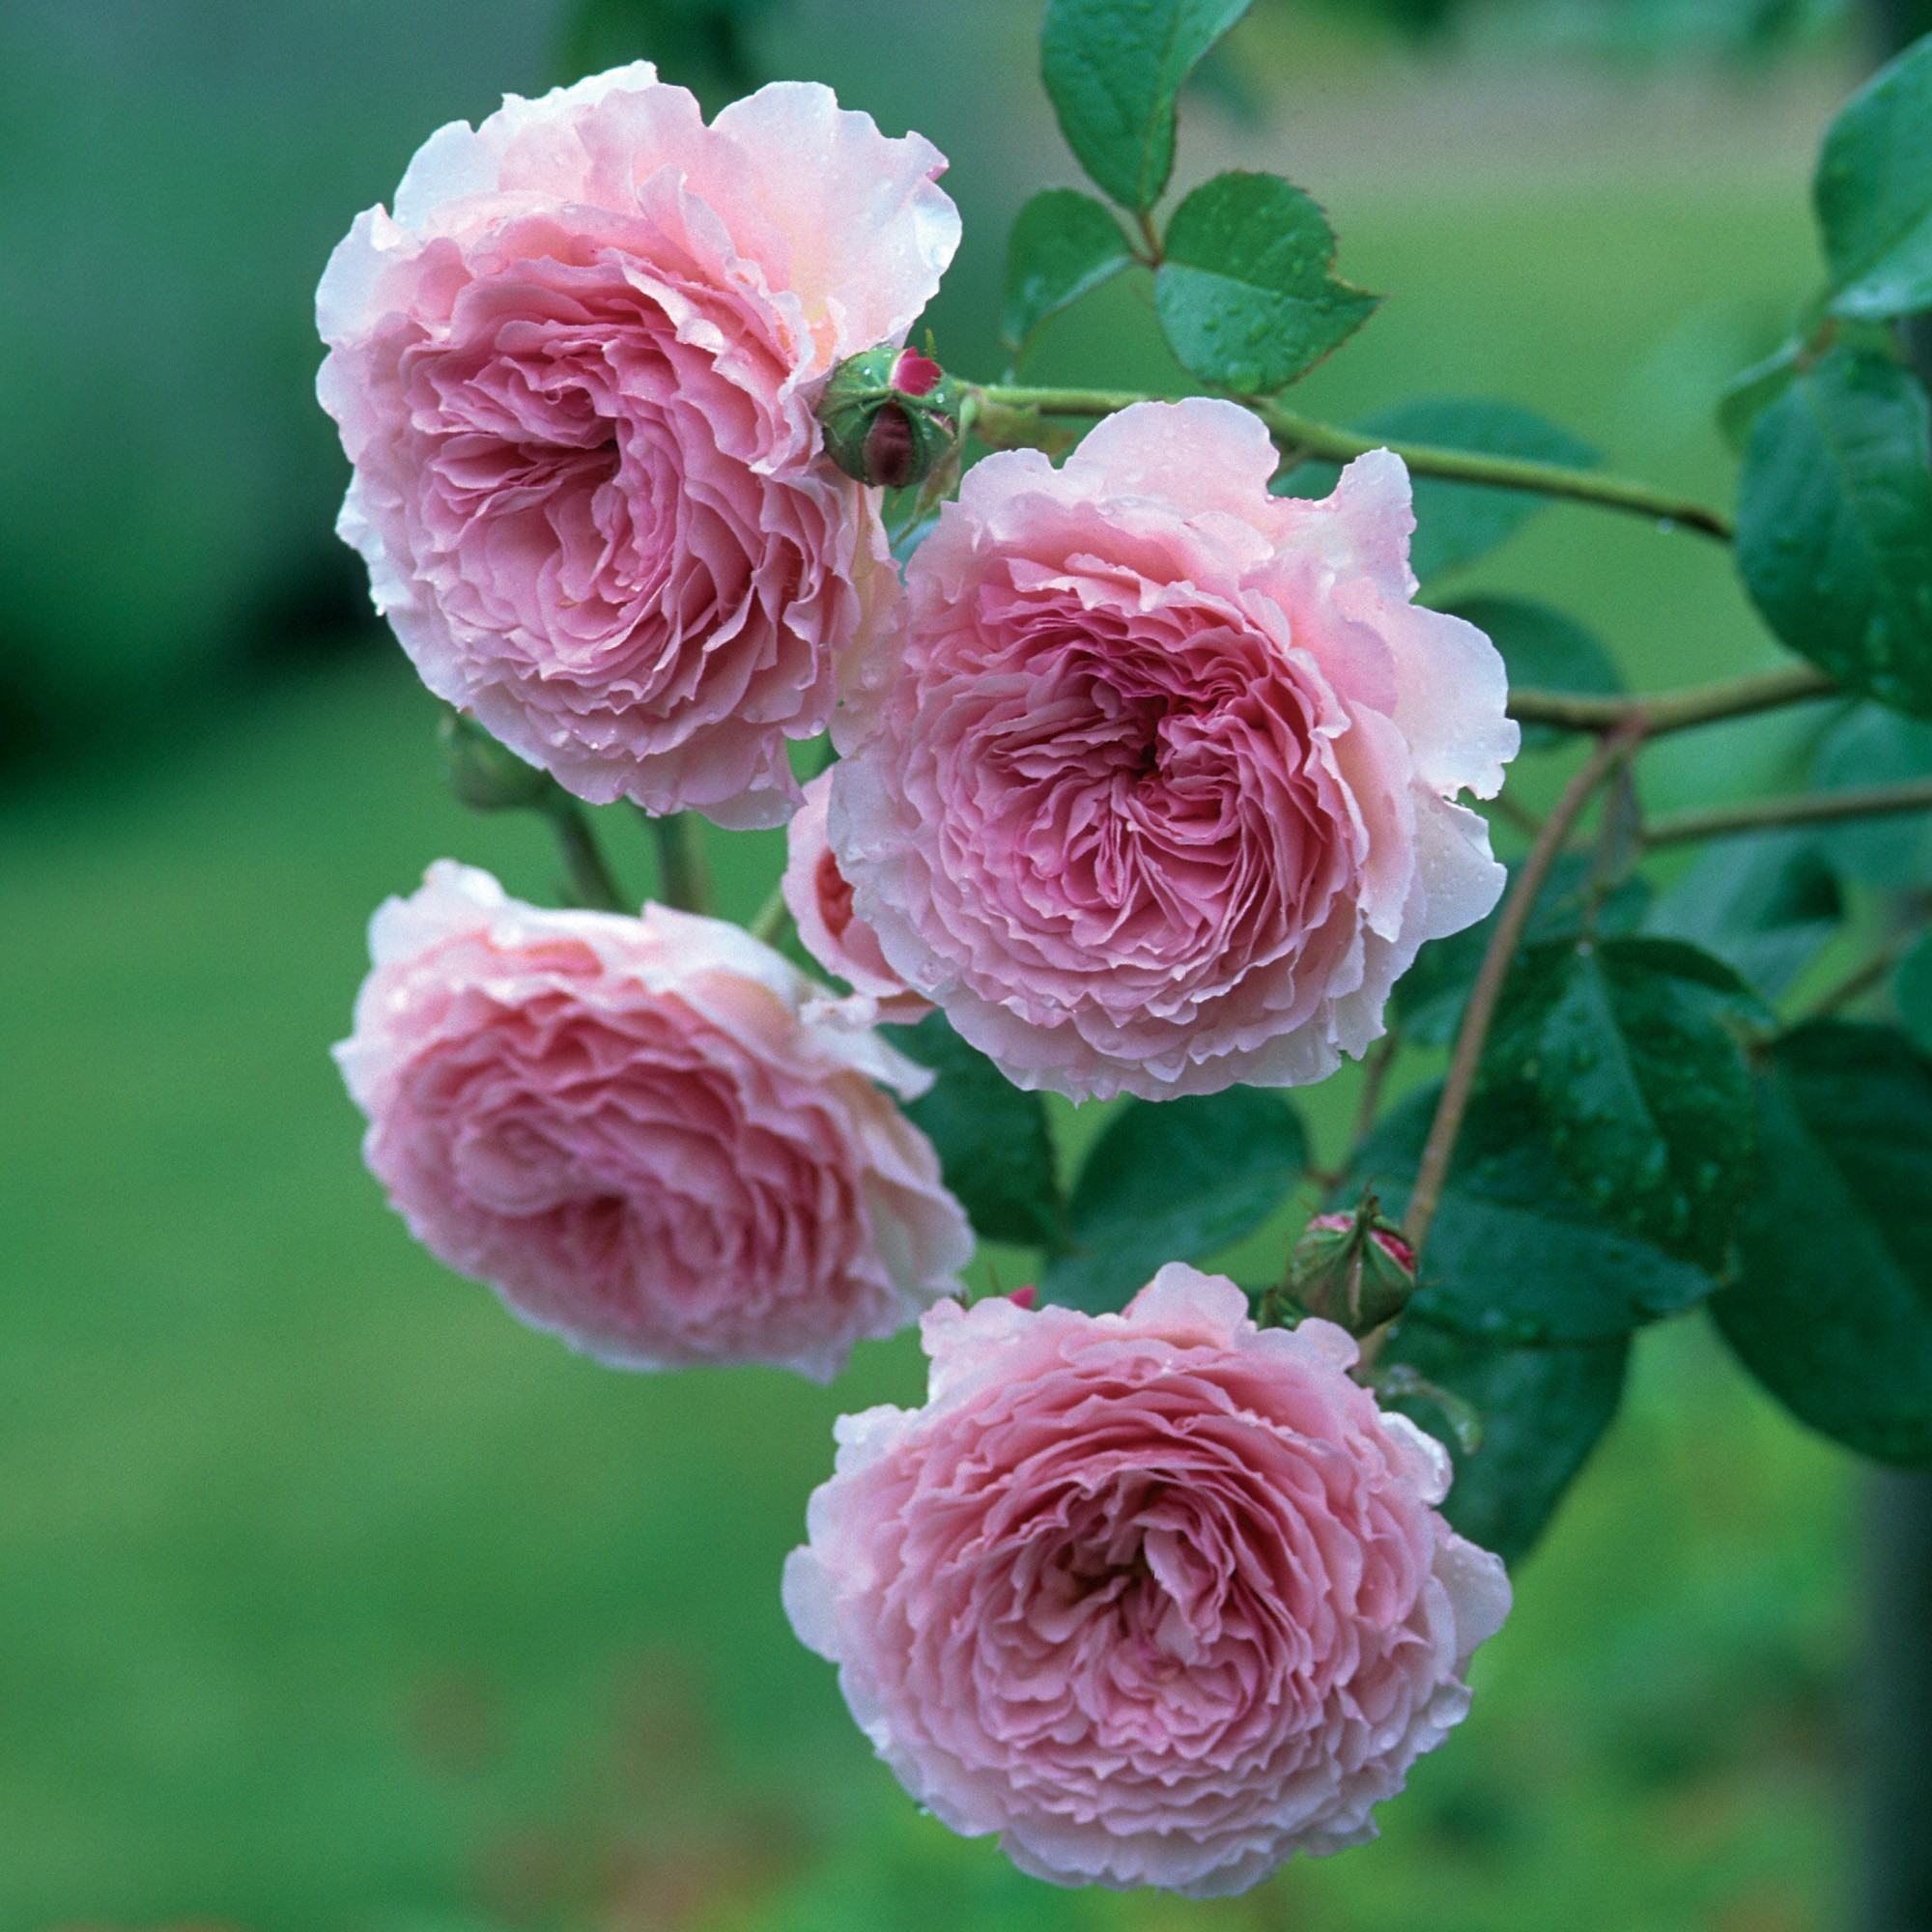 Bốn bông hoa hồng leo màu hồng nhạt